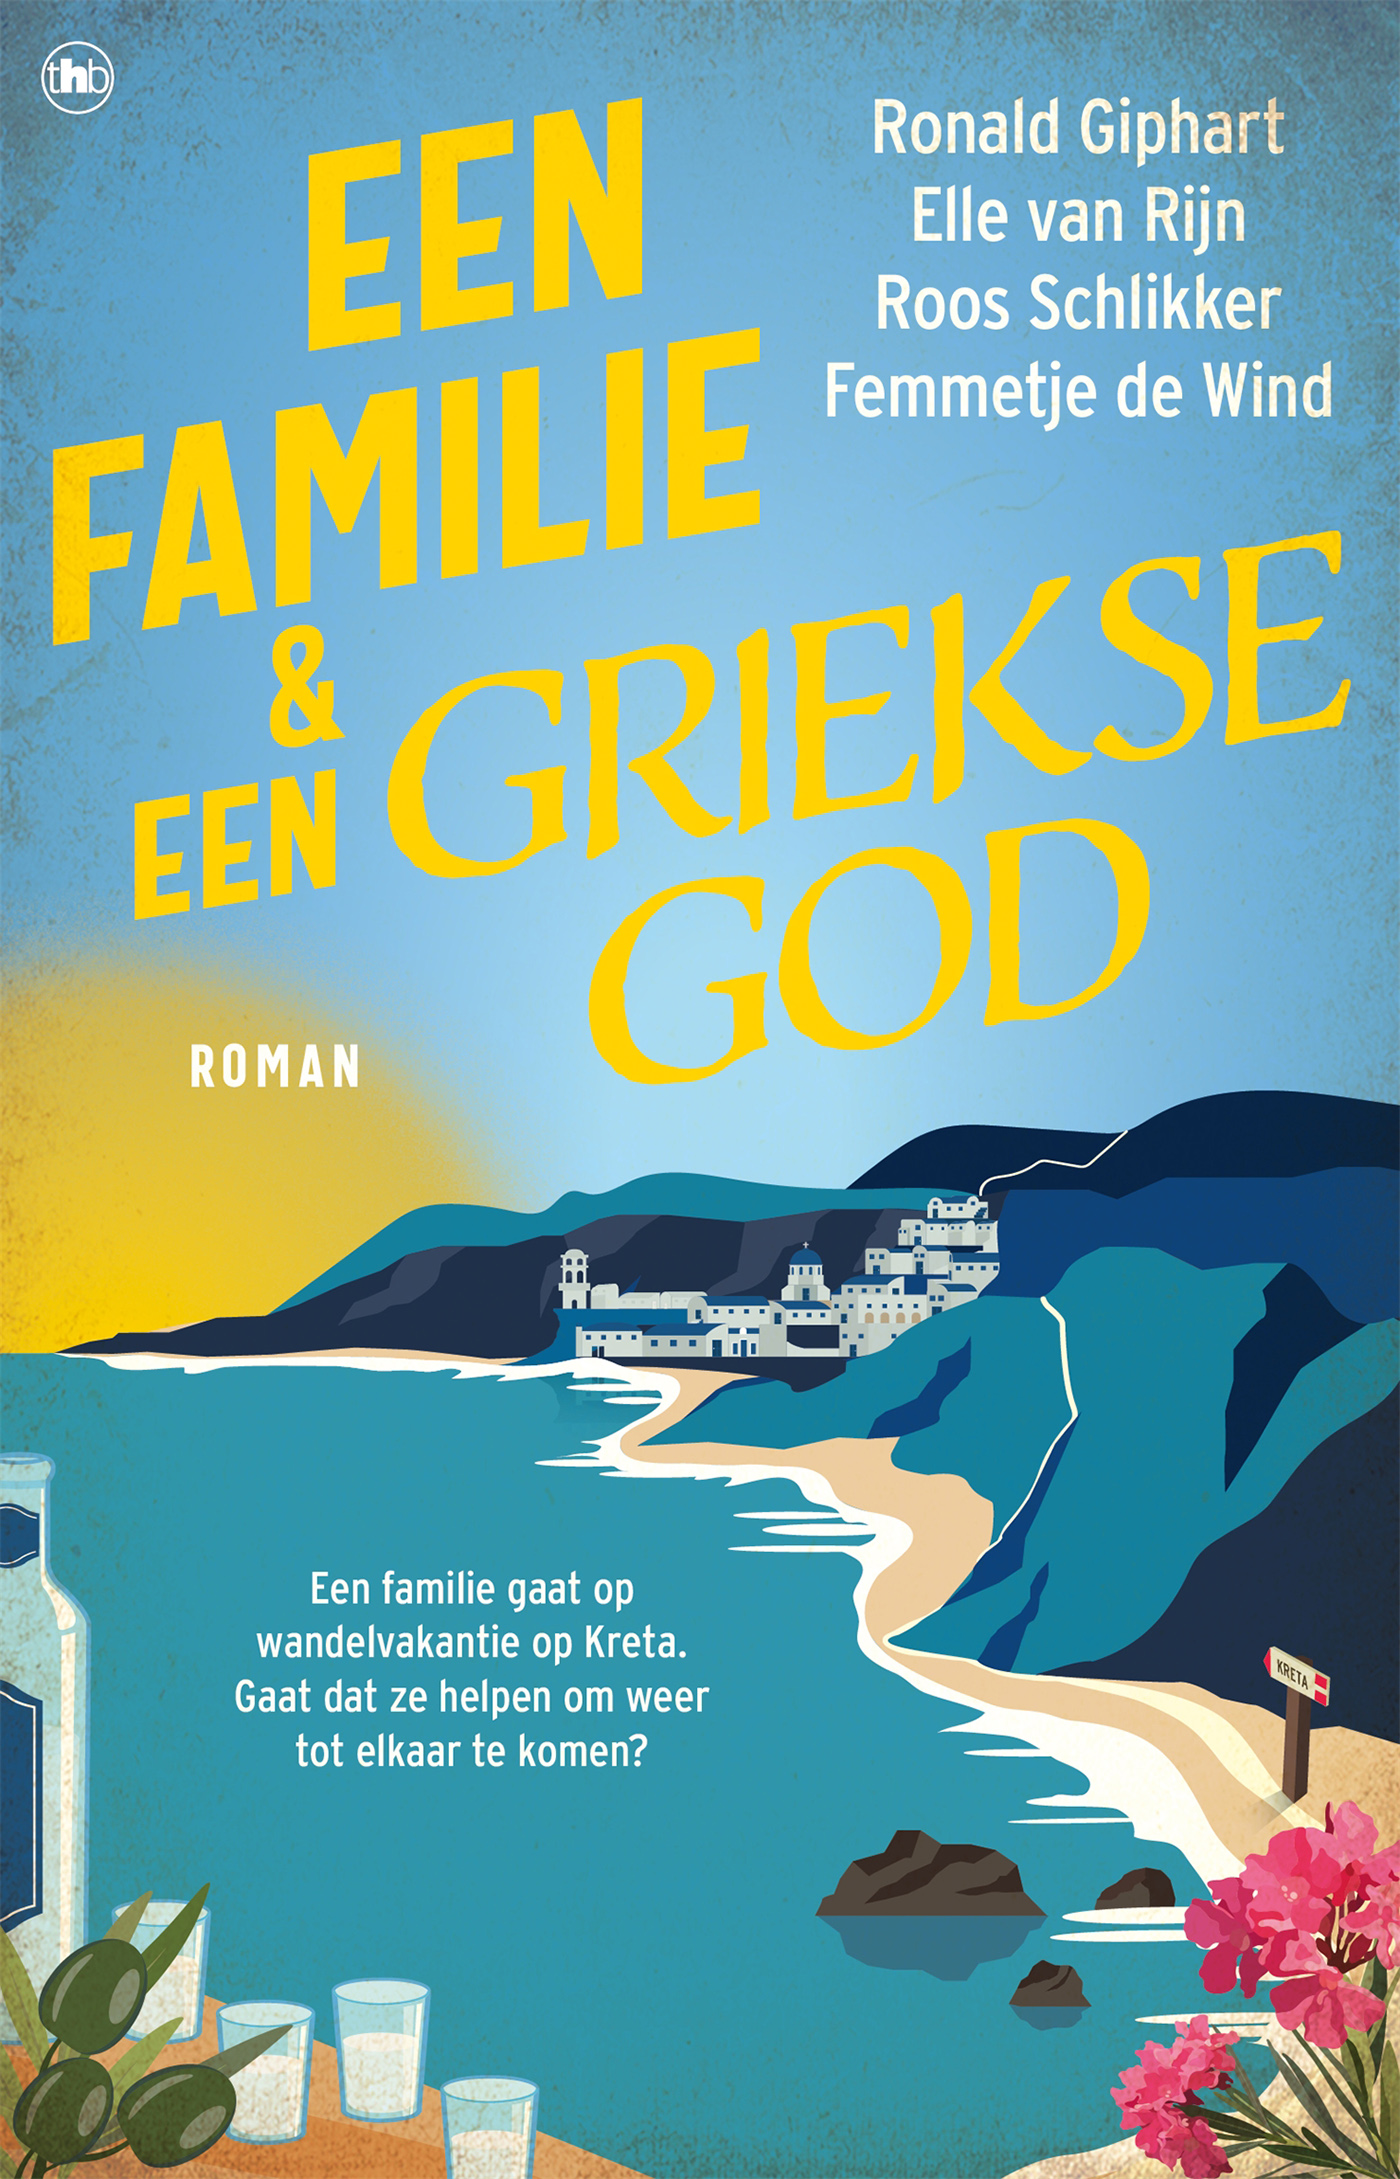 Ronald Giphart, Elle van Rijn, Roos Schlikker en Femmetje de Wind-familie en een Griekse god, Een